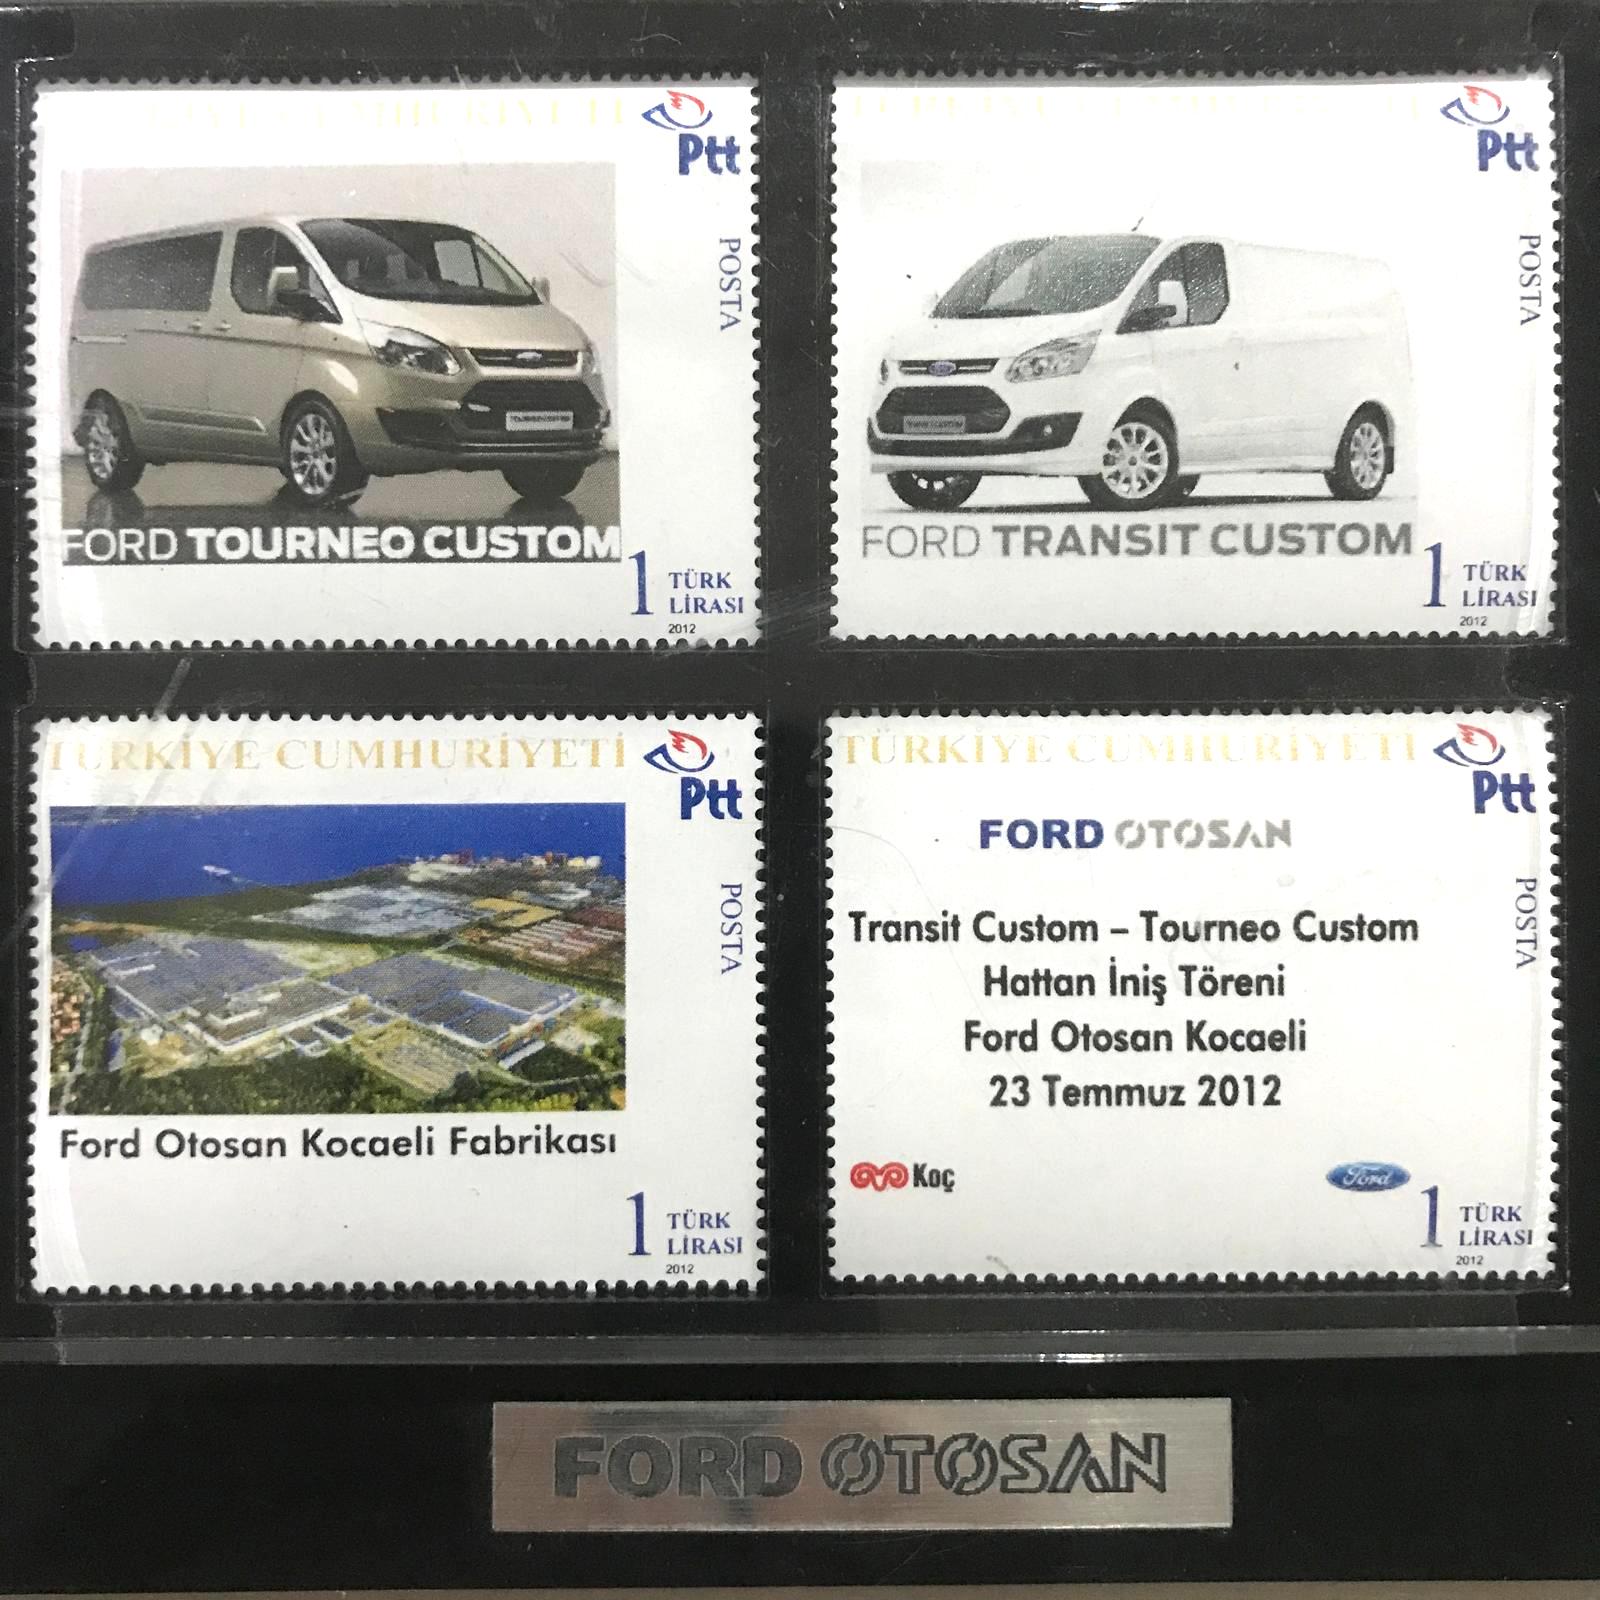 Ford Otosan Kocaeli Fabrikası - Özel pleksi muhafazası içinde. hatıra pullar